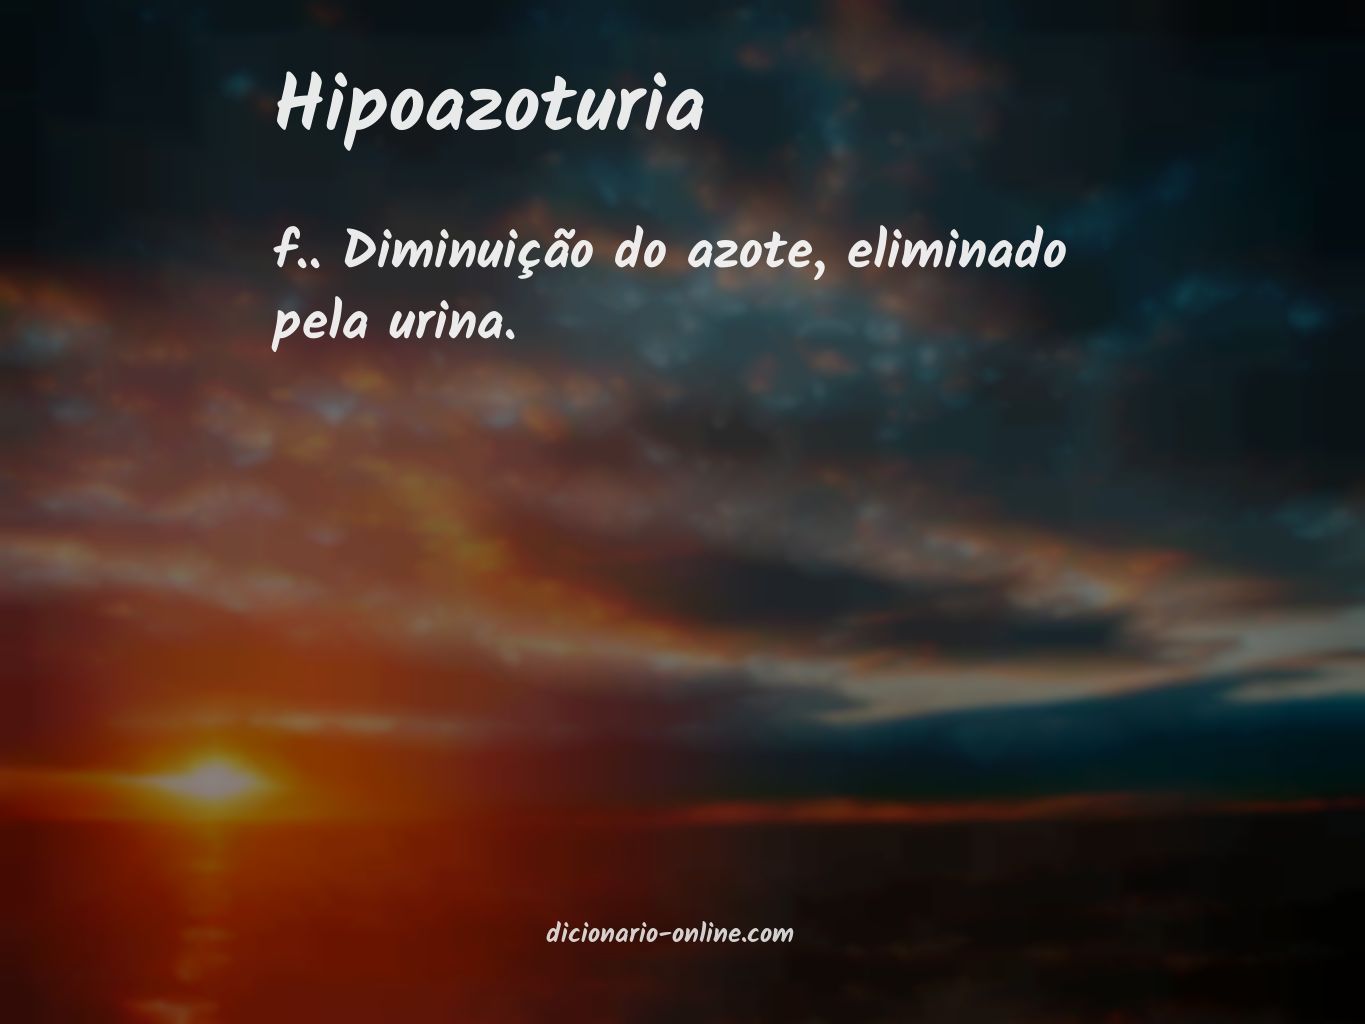 Significado de hipoazoturia